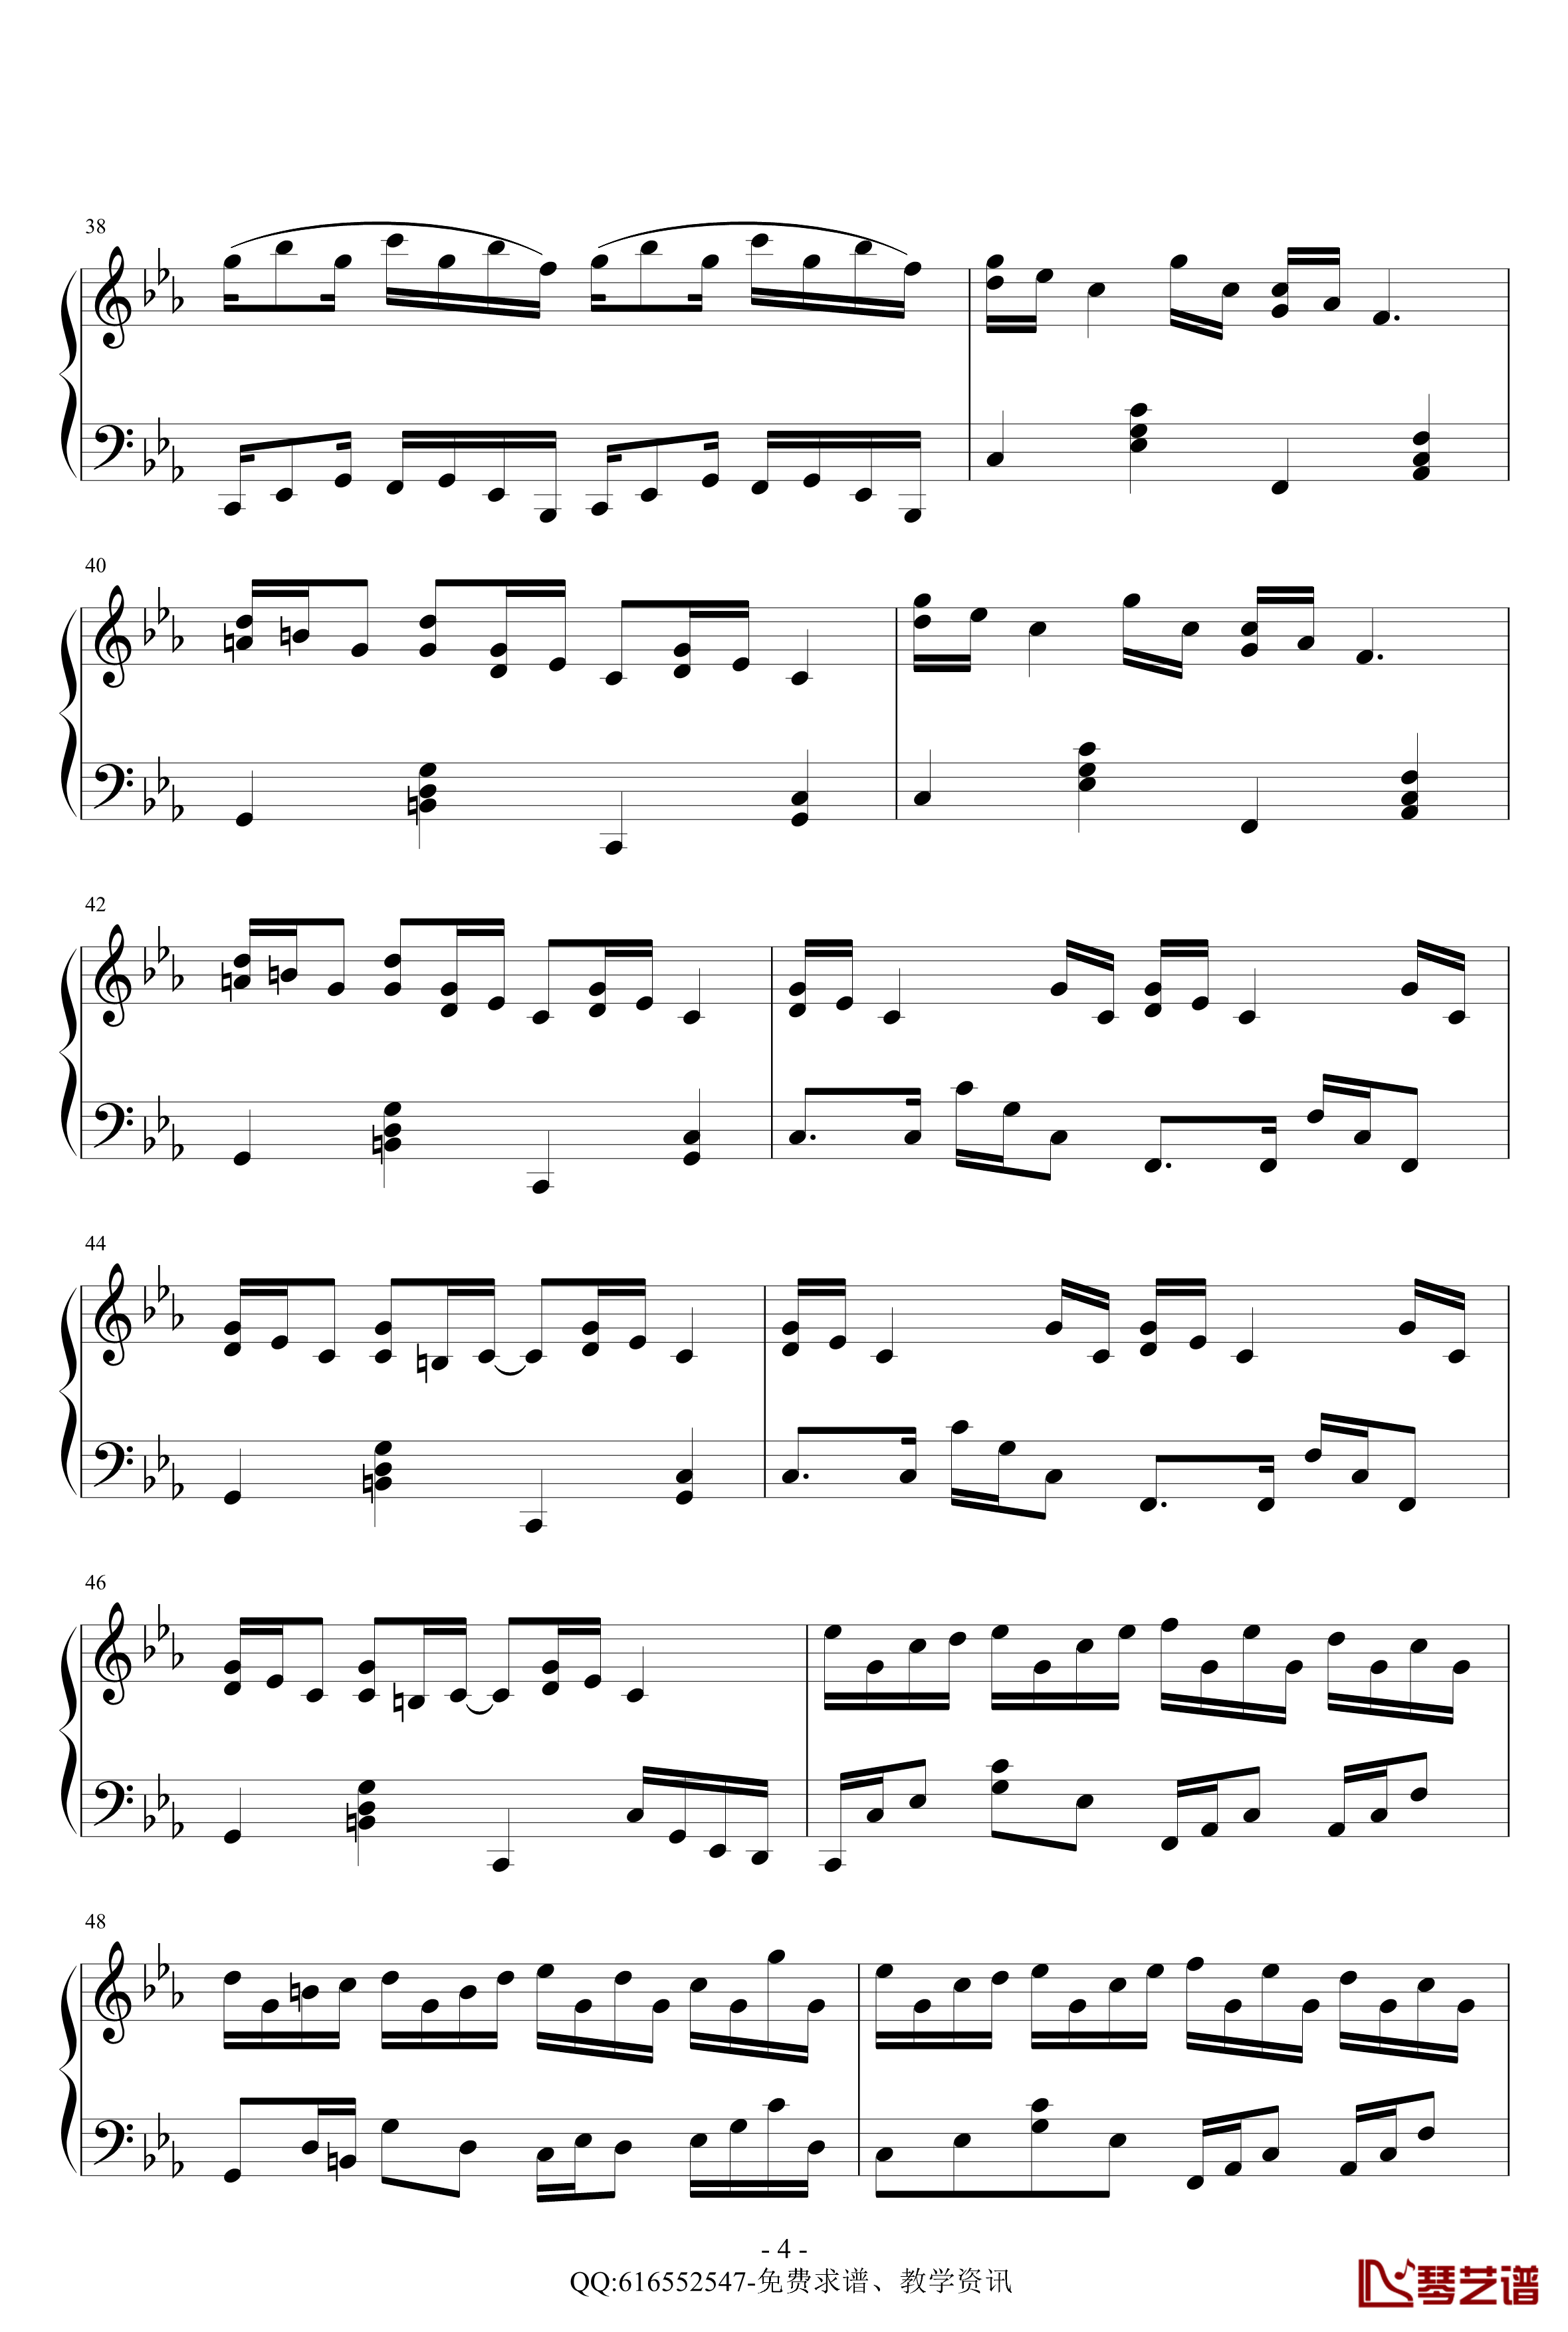 克罗地亚狂想曲钢琴谱-精致版-金龙鱼170427-马克西姆-Maksim·Mrvica4